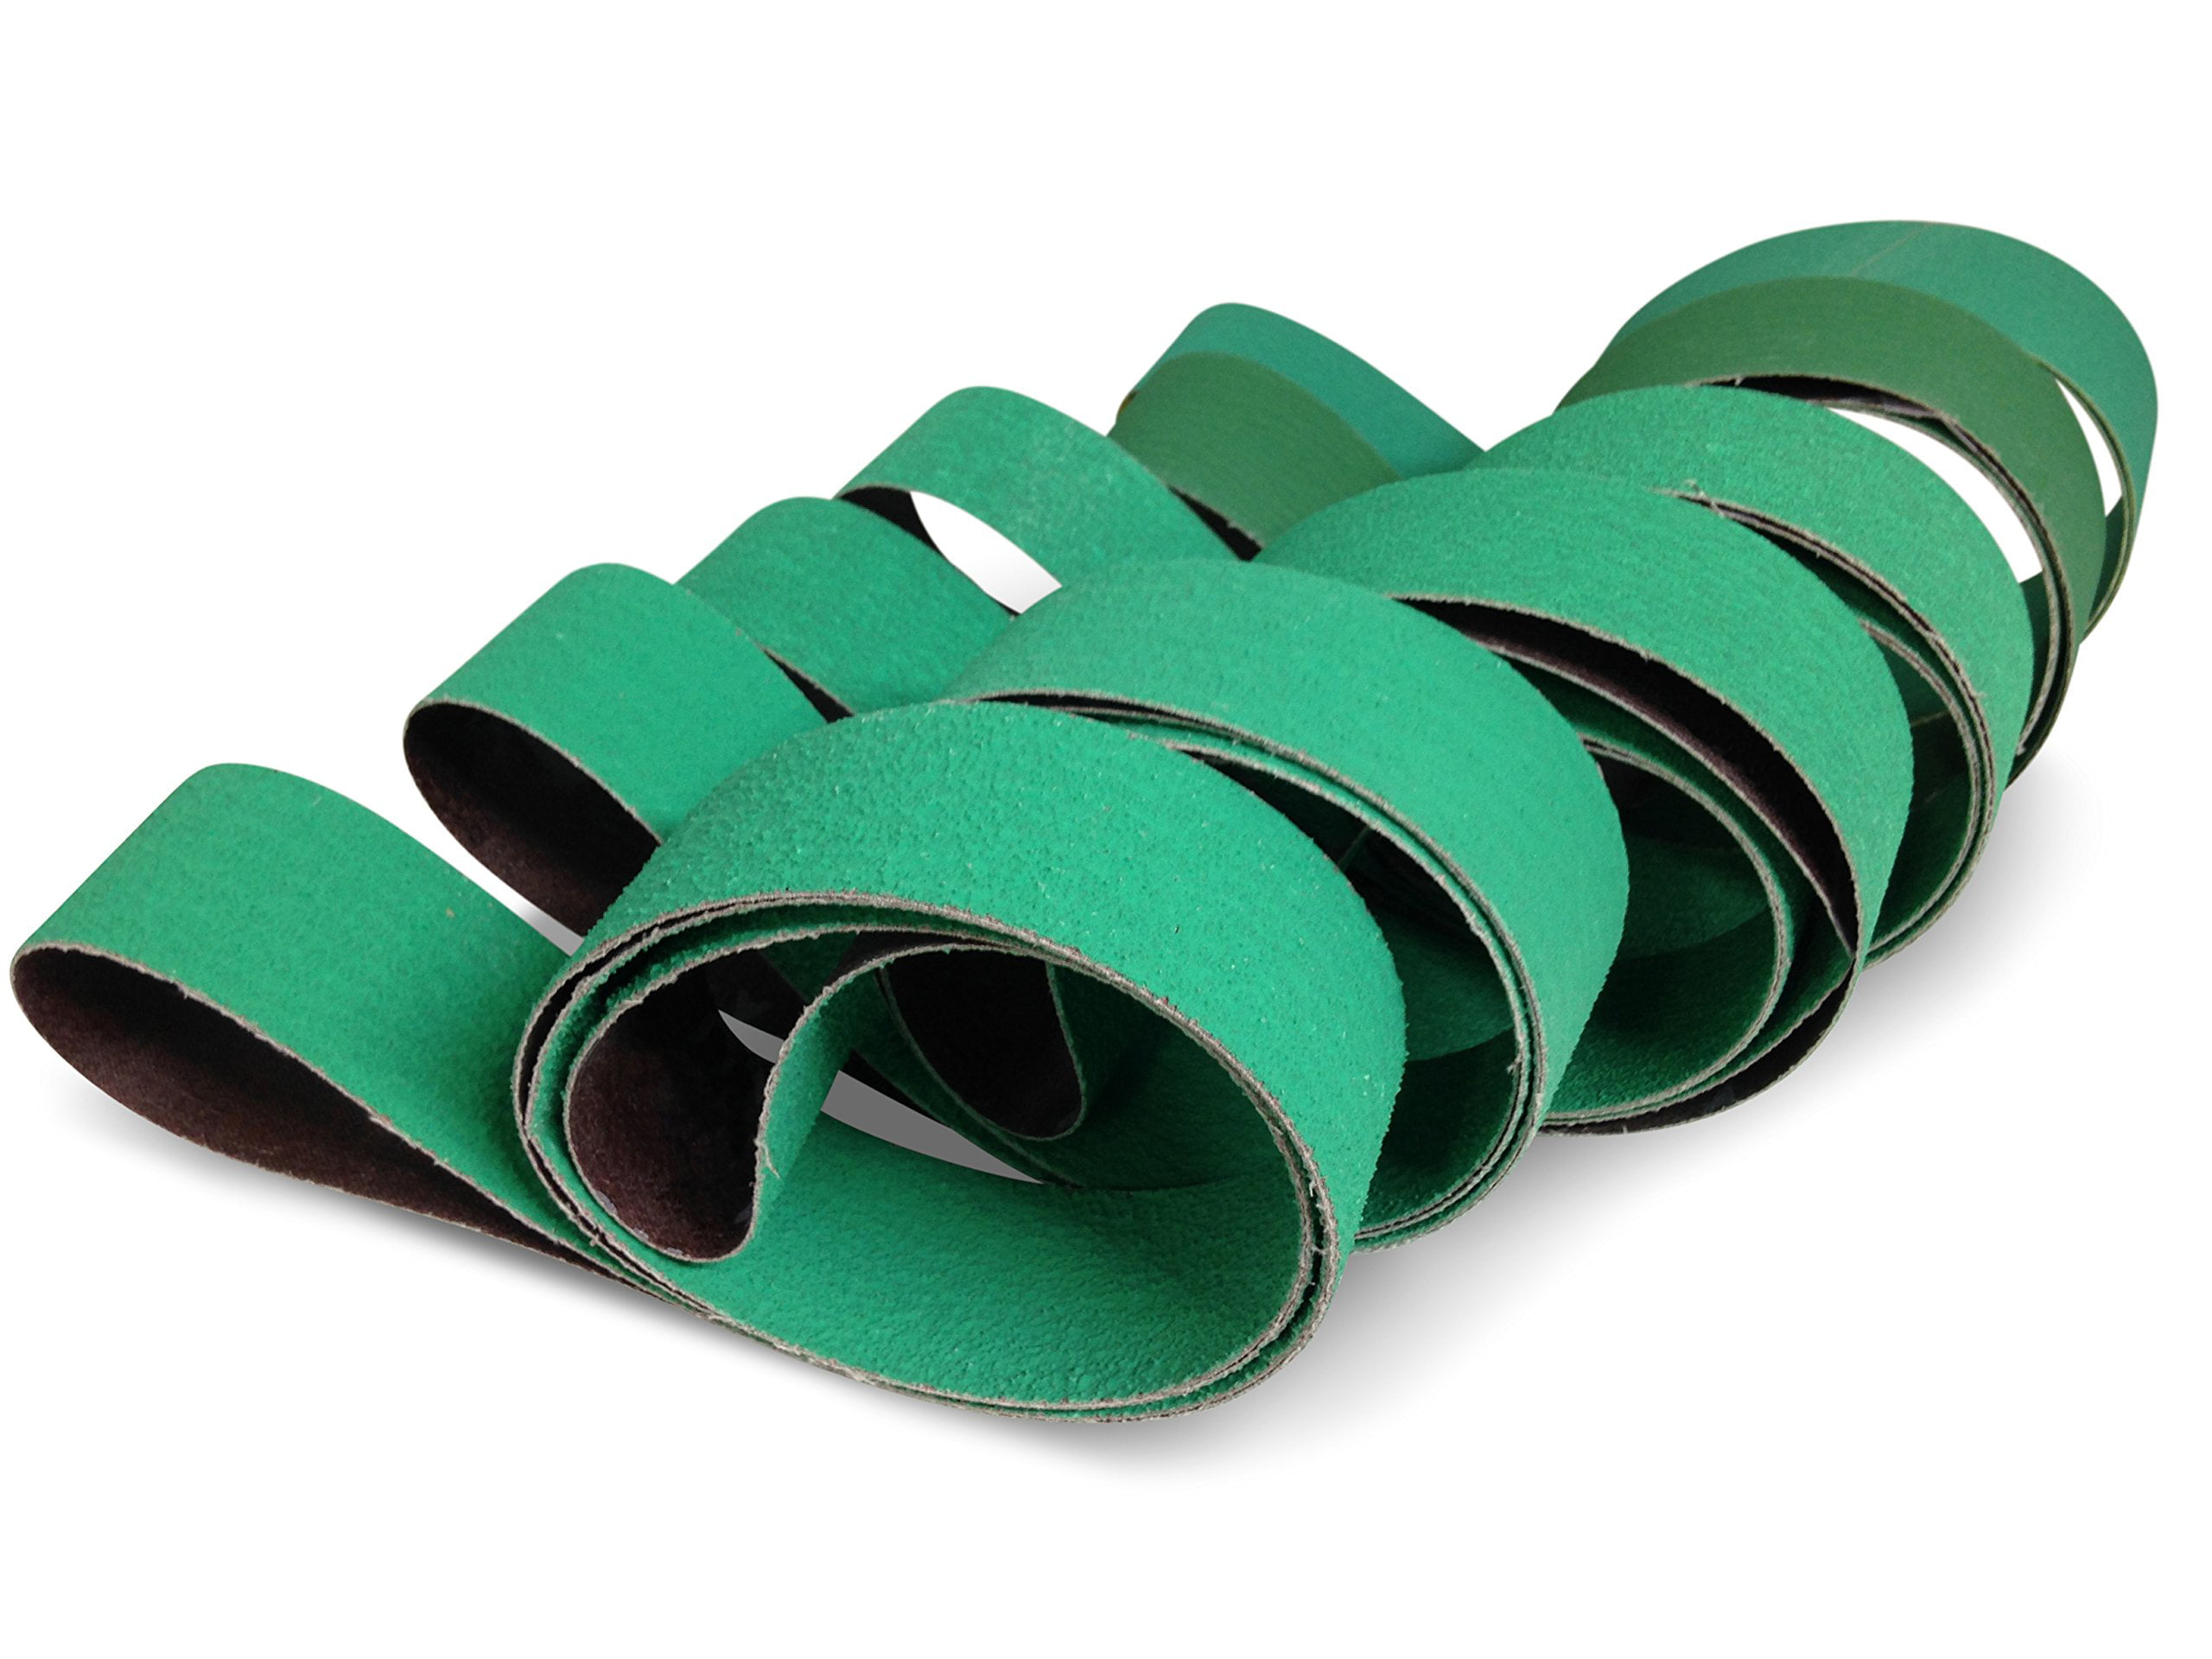 3 X 79 Inch 120 Grit Metal Grinding Zirconia Sanding Belts 4 Pack